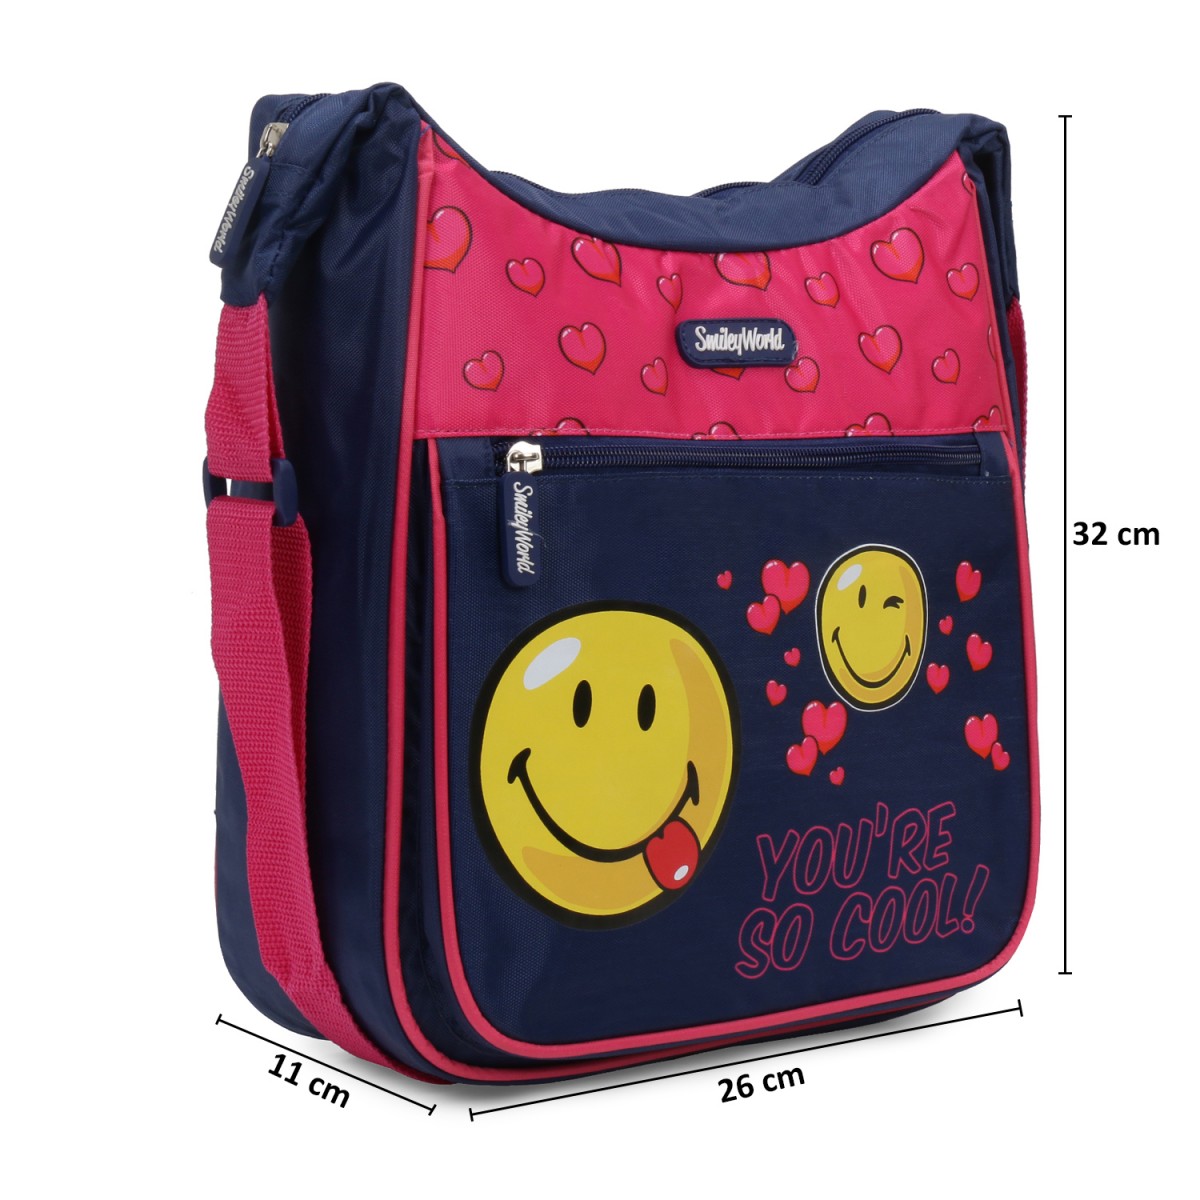 Smiley World Messenger Bag Multicolor 3Y+